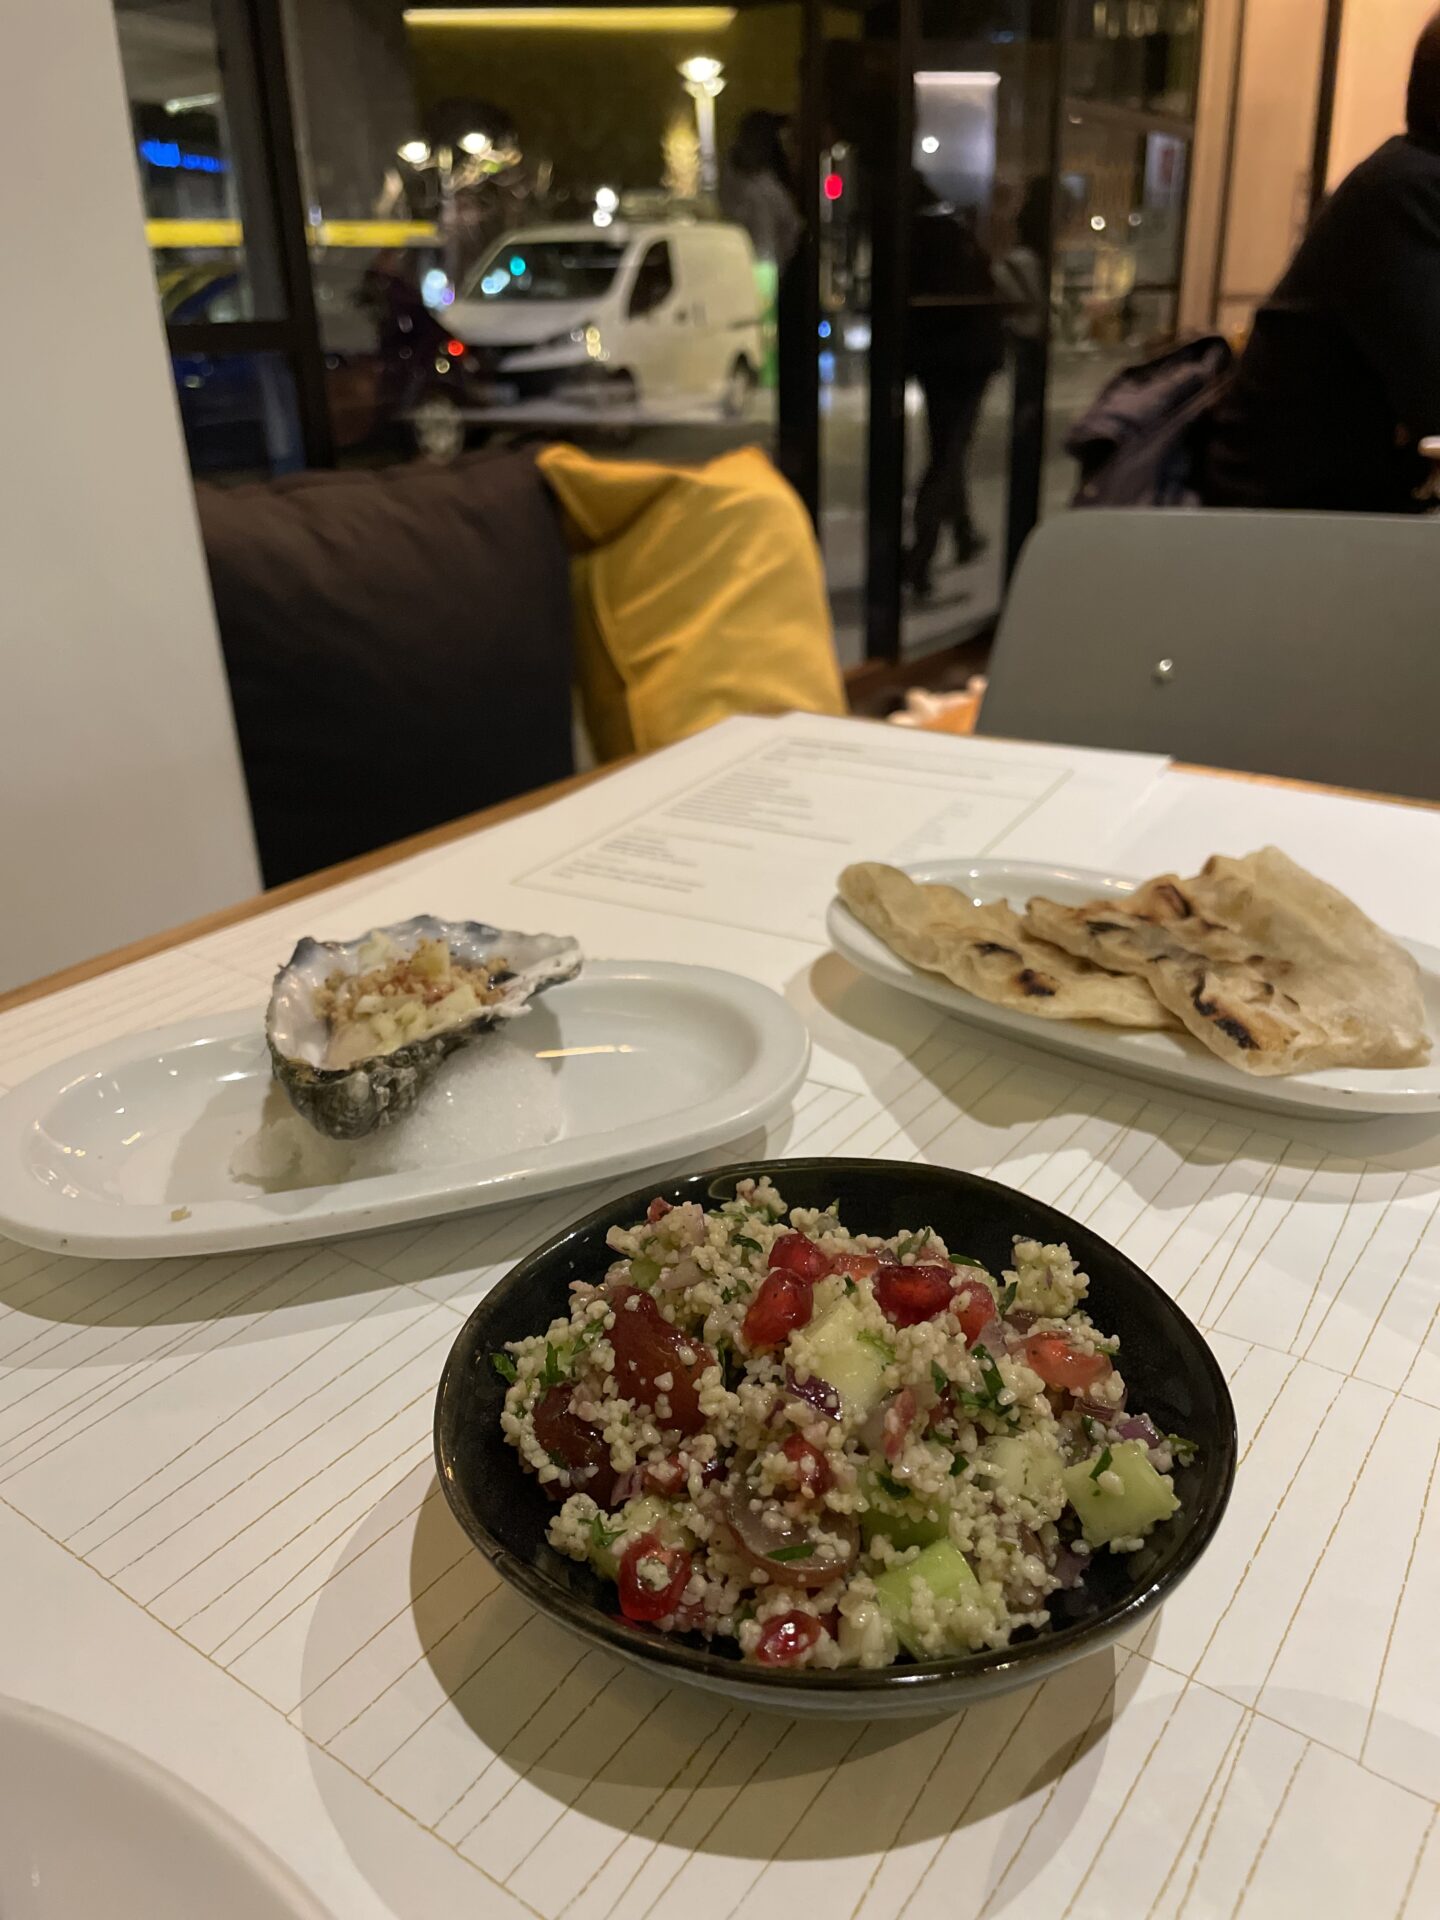 Cuina oberta bij Baalbec - Restaurants ontdekken tijdens de Valencia restaurant week - Culinaire reis tips van Foodblog Foodinista